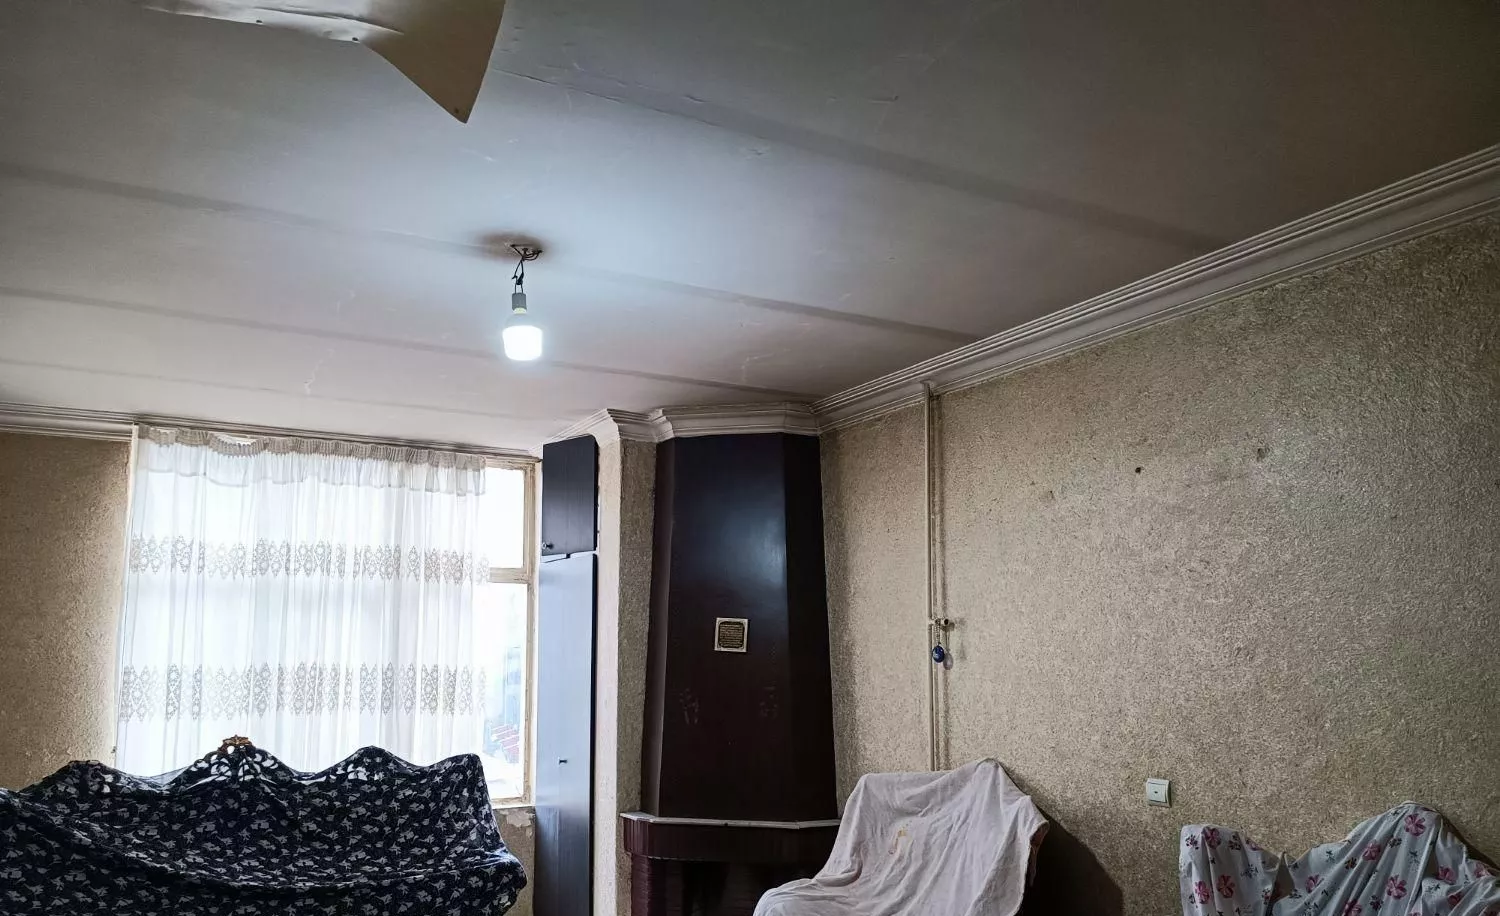 یک واحد آپارتمان 85متری دو خوابه واقع در پرتوی .